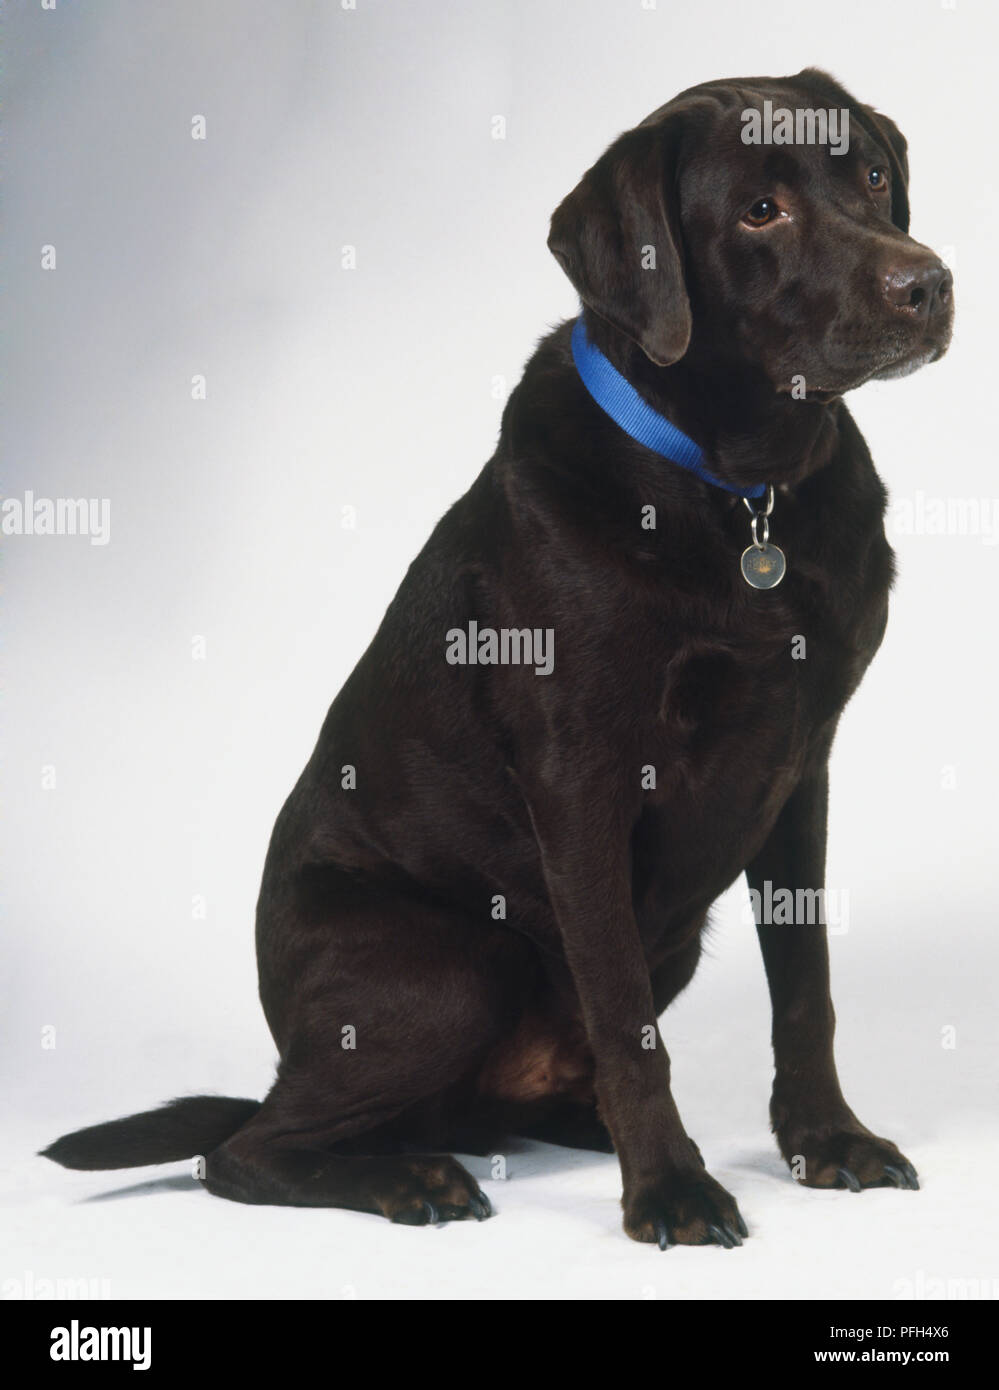 Sitzung schwarzer Labrador Retriever Hund (Canis familiaris) trägt ein blaues Halsband, Seitenansicht Stockfoto